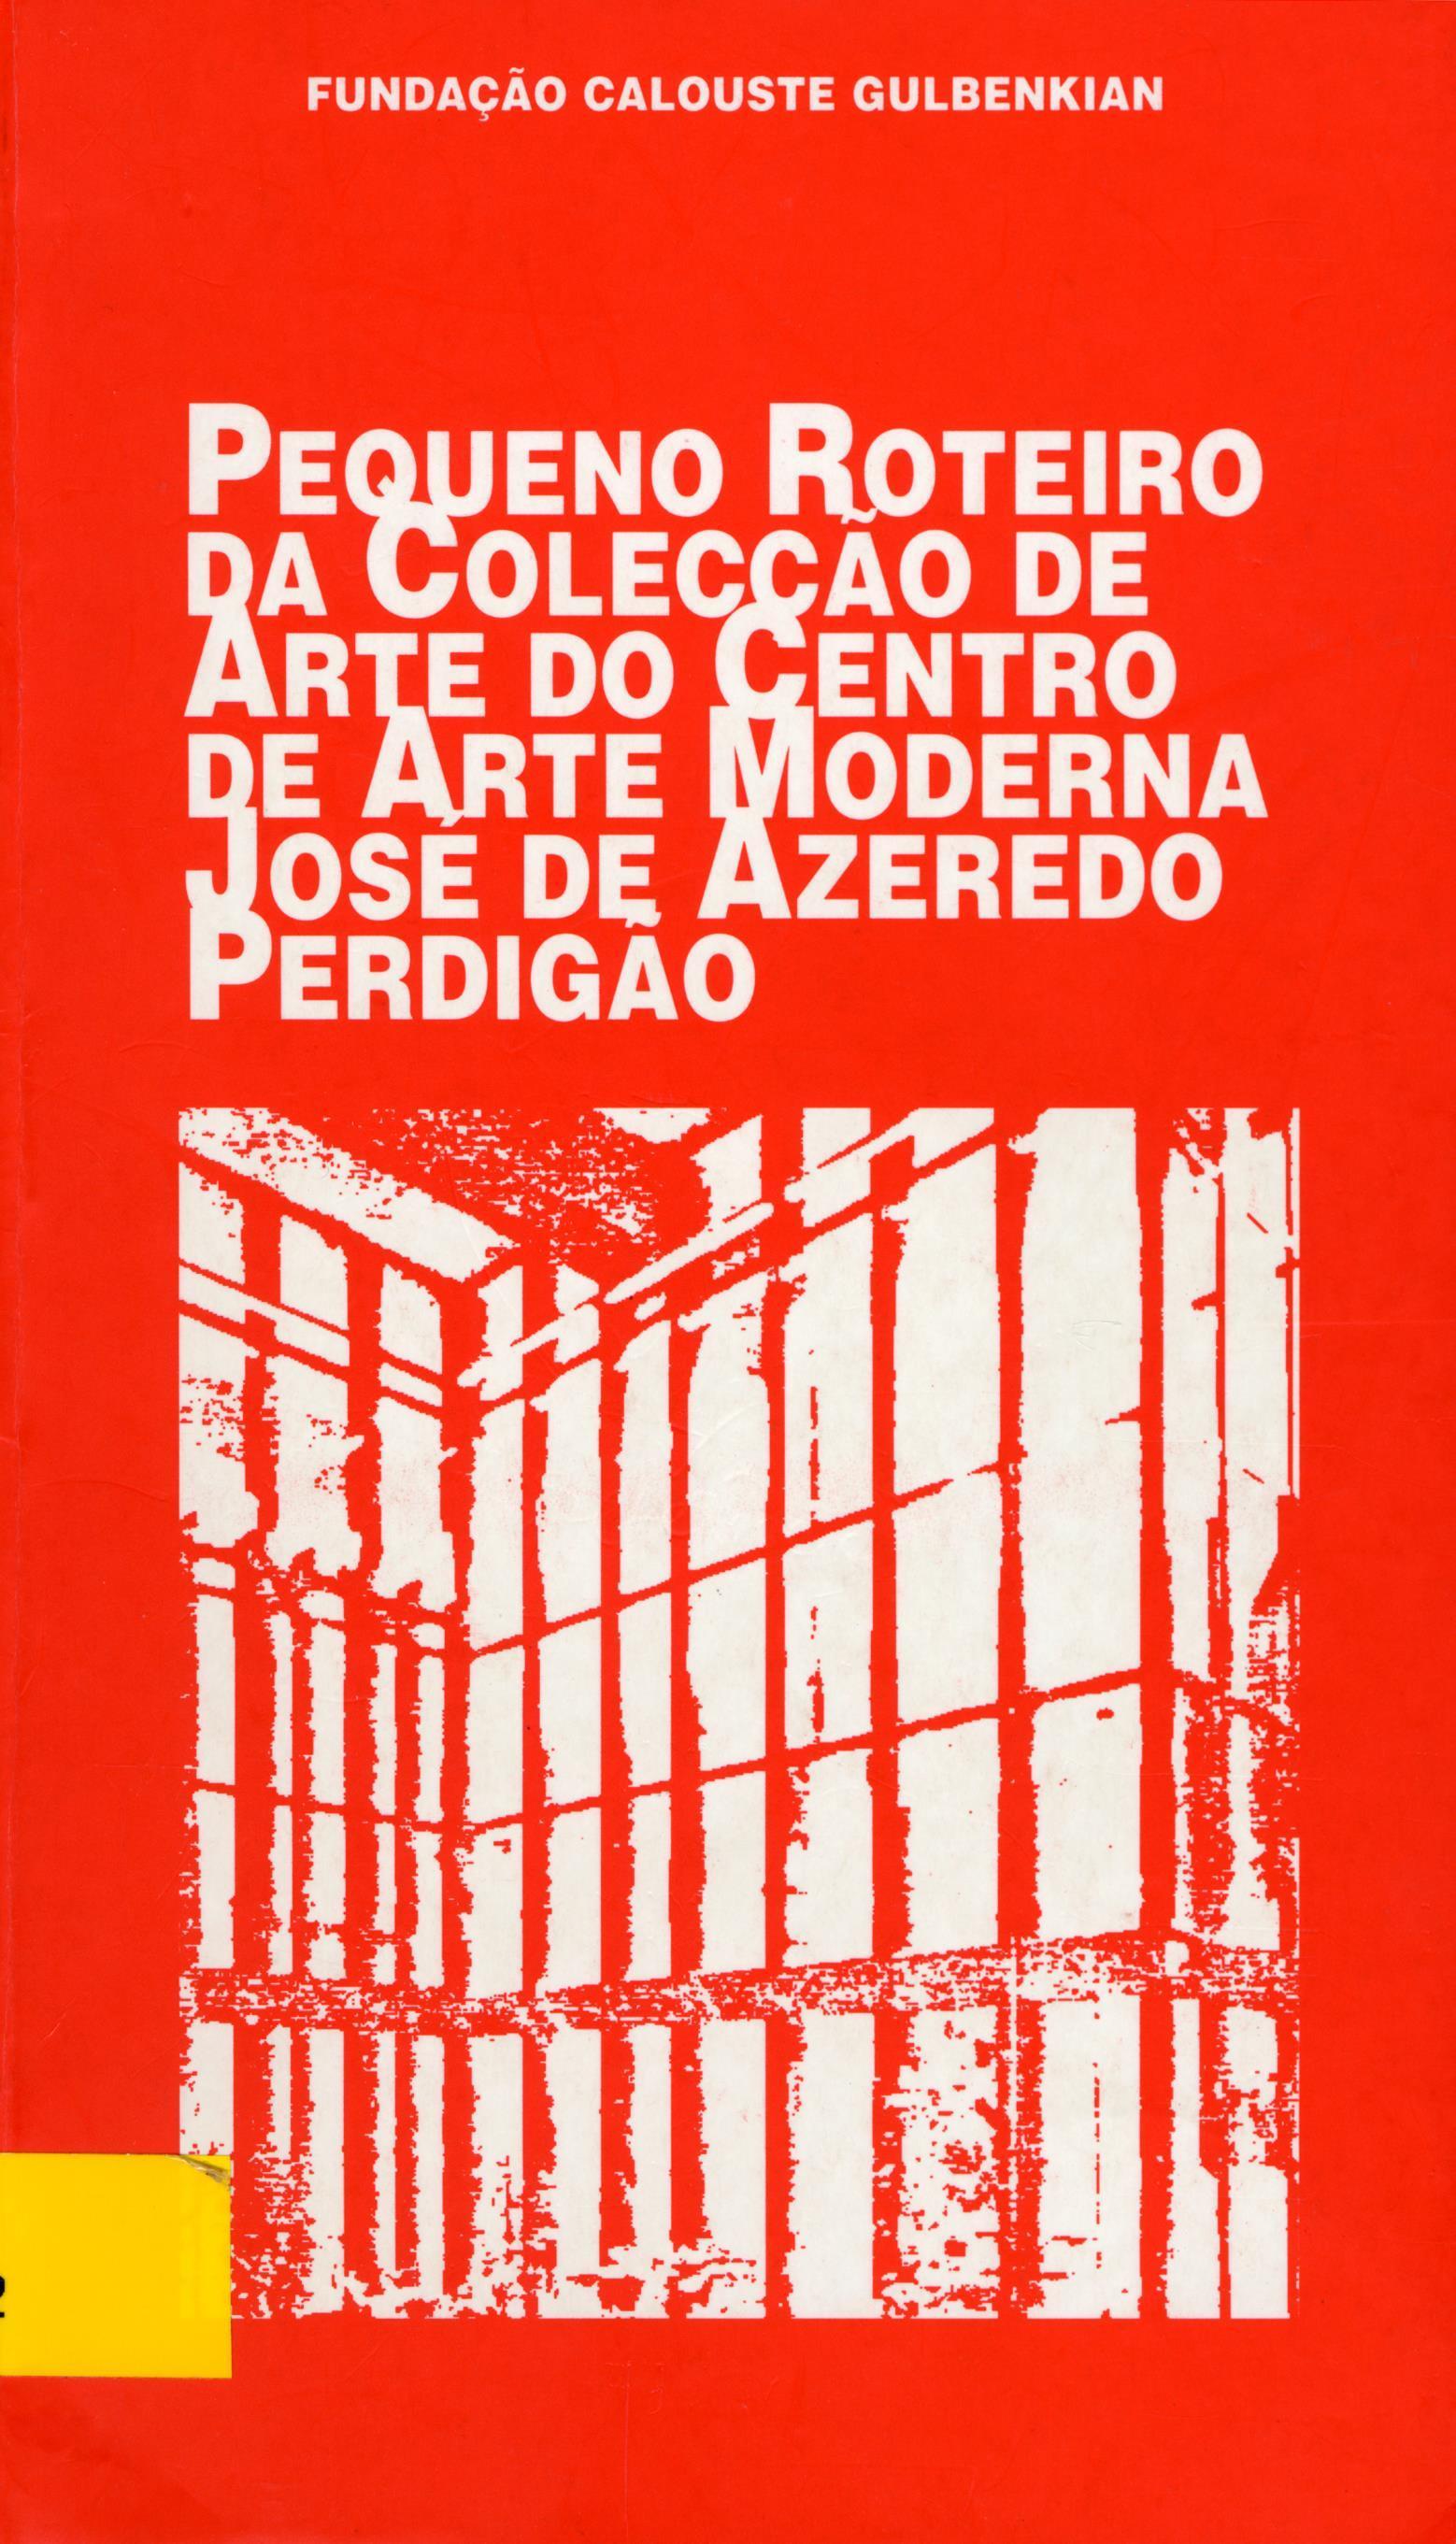 Pequeno Roteiro da Colecção de Arte do Centro de Arte Moderna José de Azeredo Perdigão